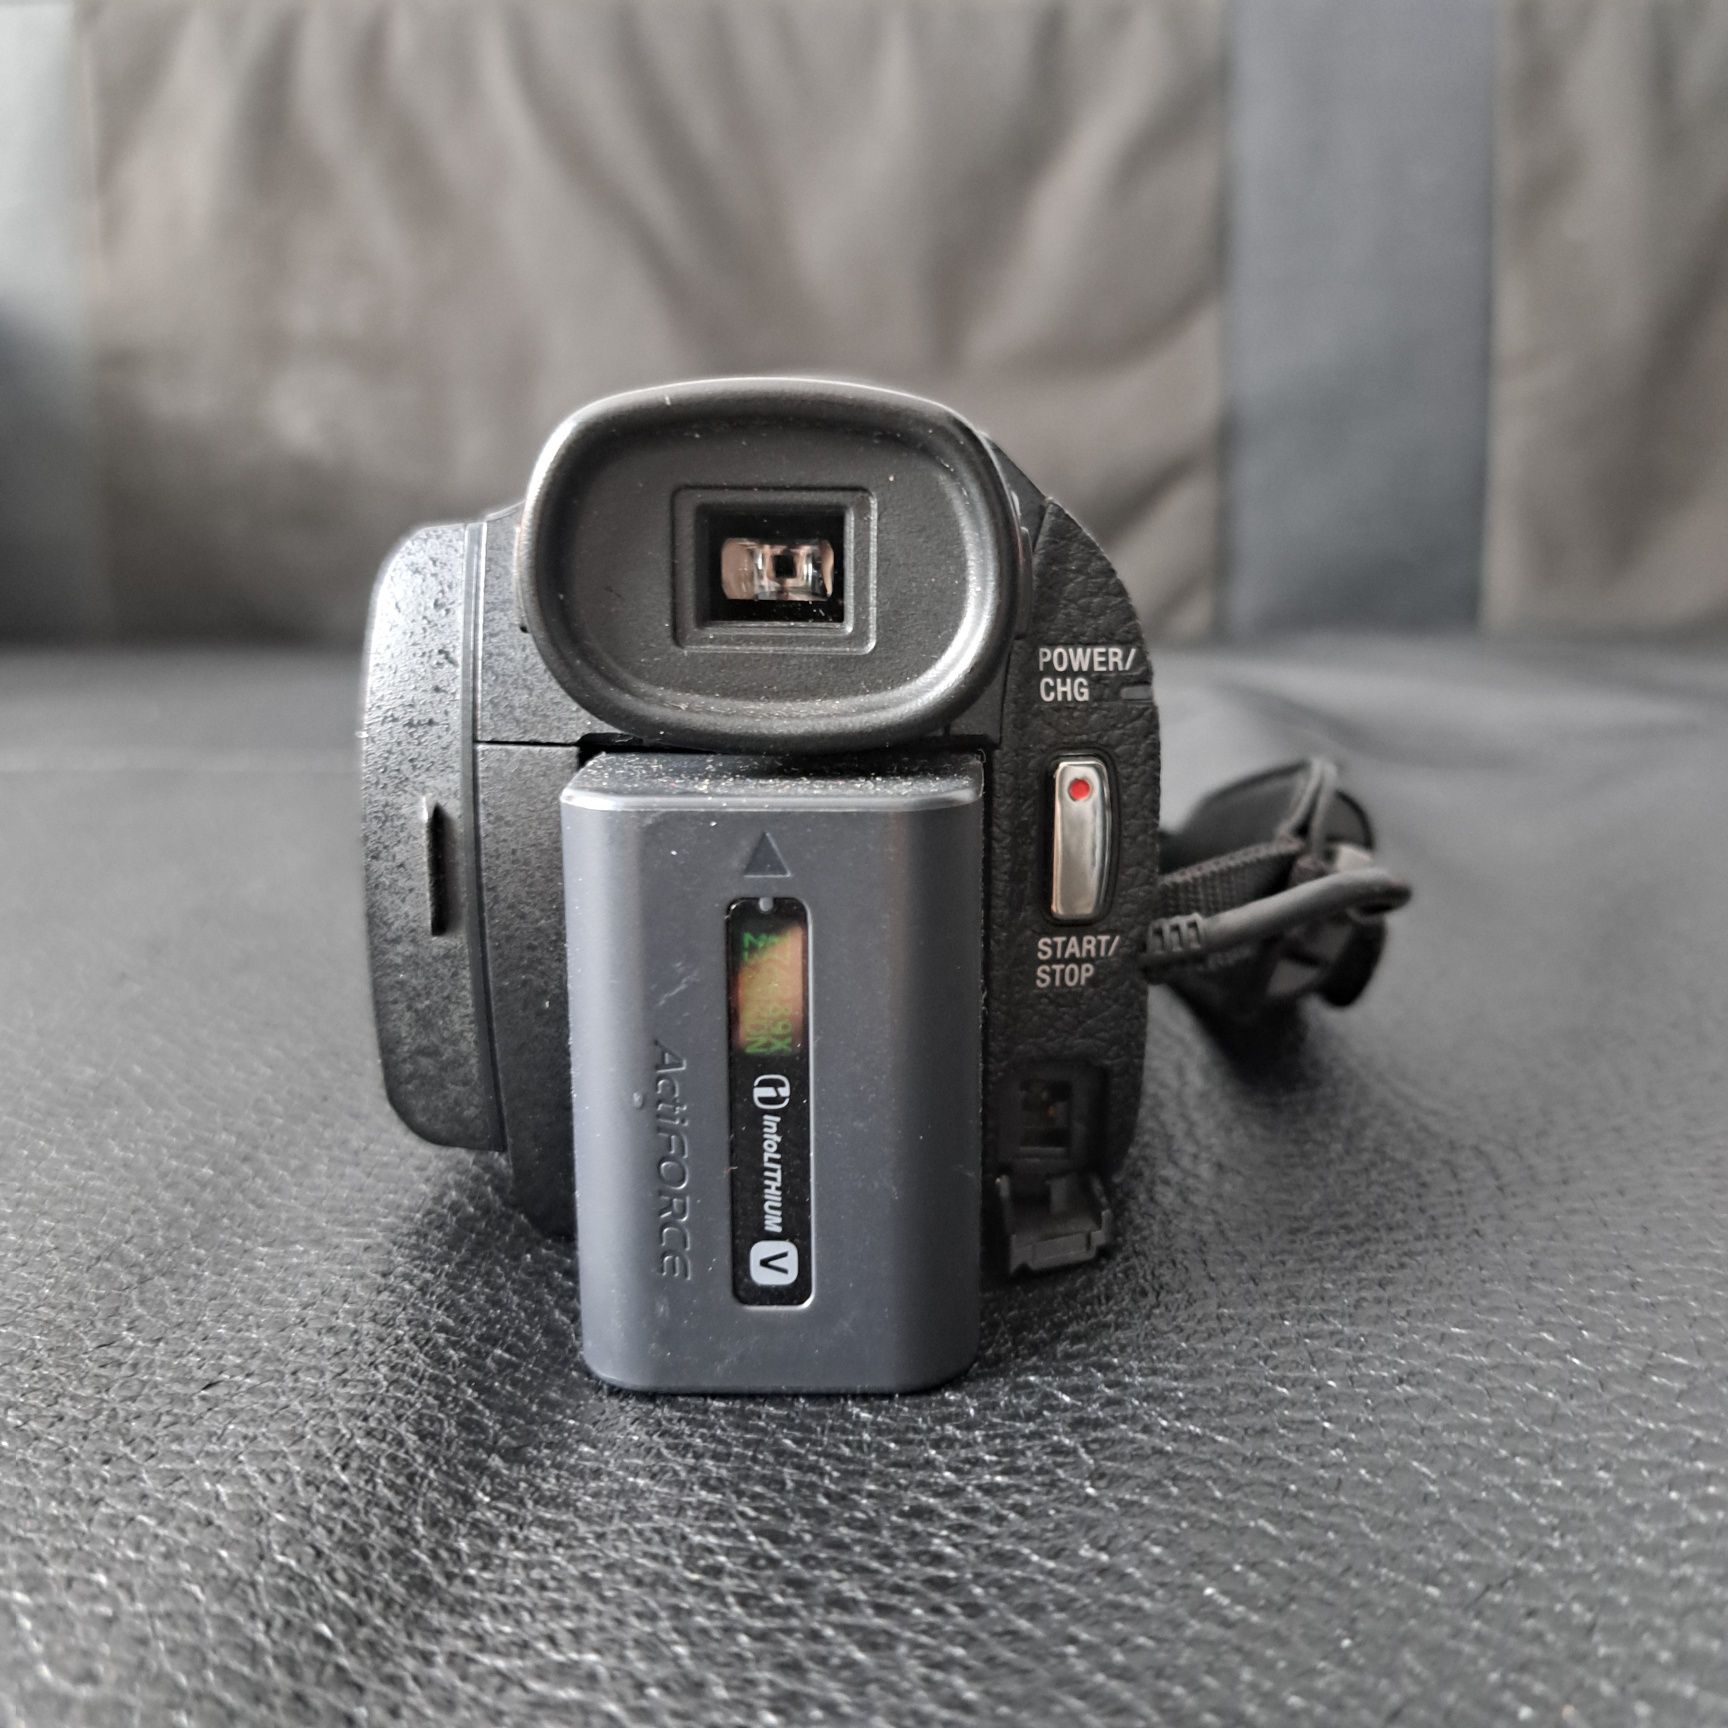 Kamera Sony FDR-AX33 HandyCam 4K